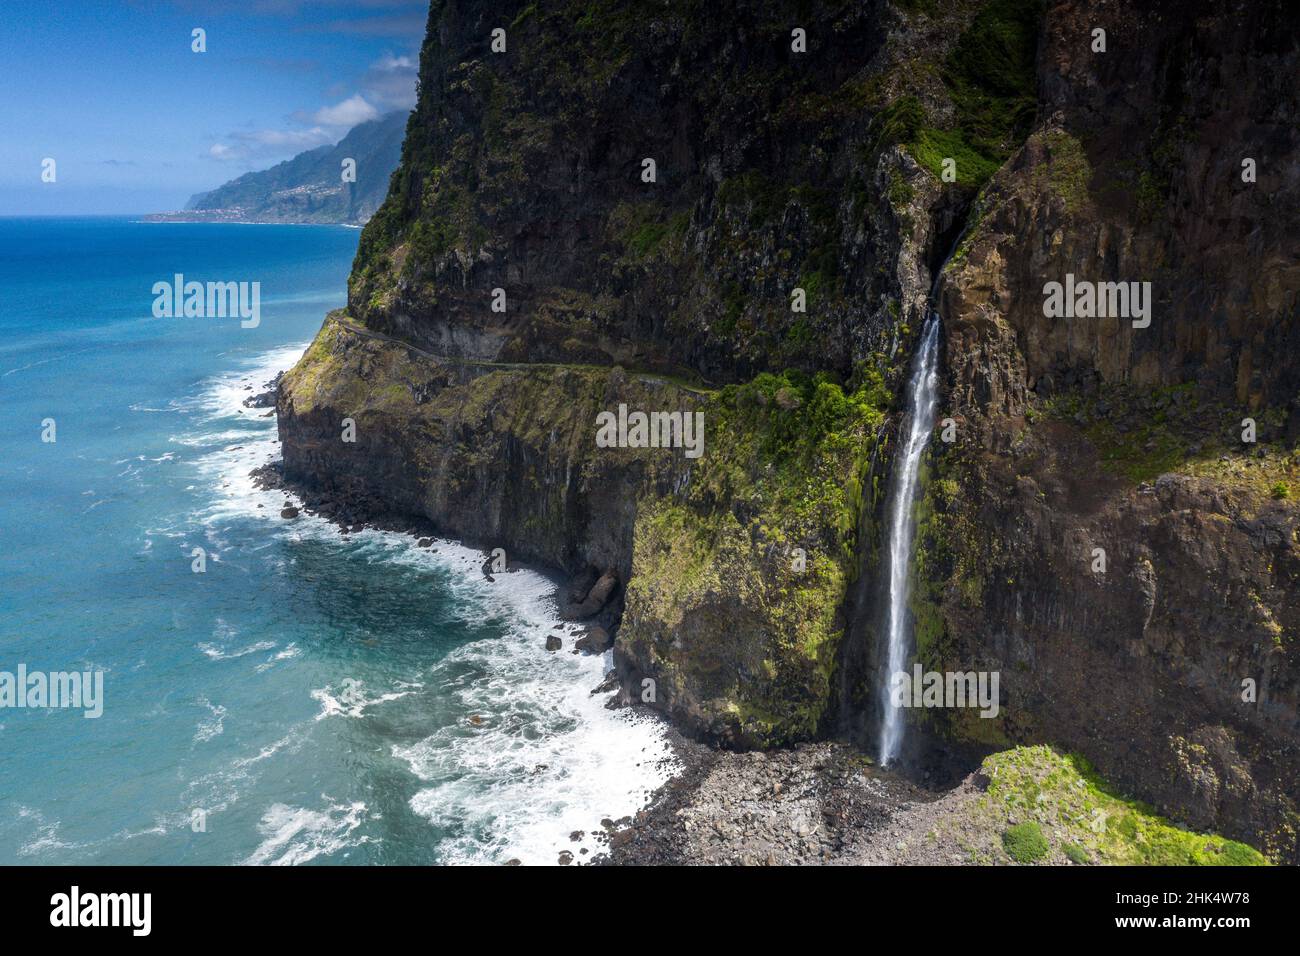 El agua que fluye de la caída del Veil nupcial que cae de rocas, Seixal, isla de Madeira, Portugal, Atlántico, Europa Foto de stock